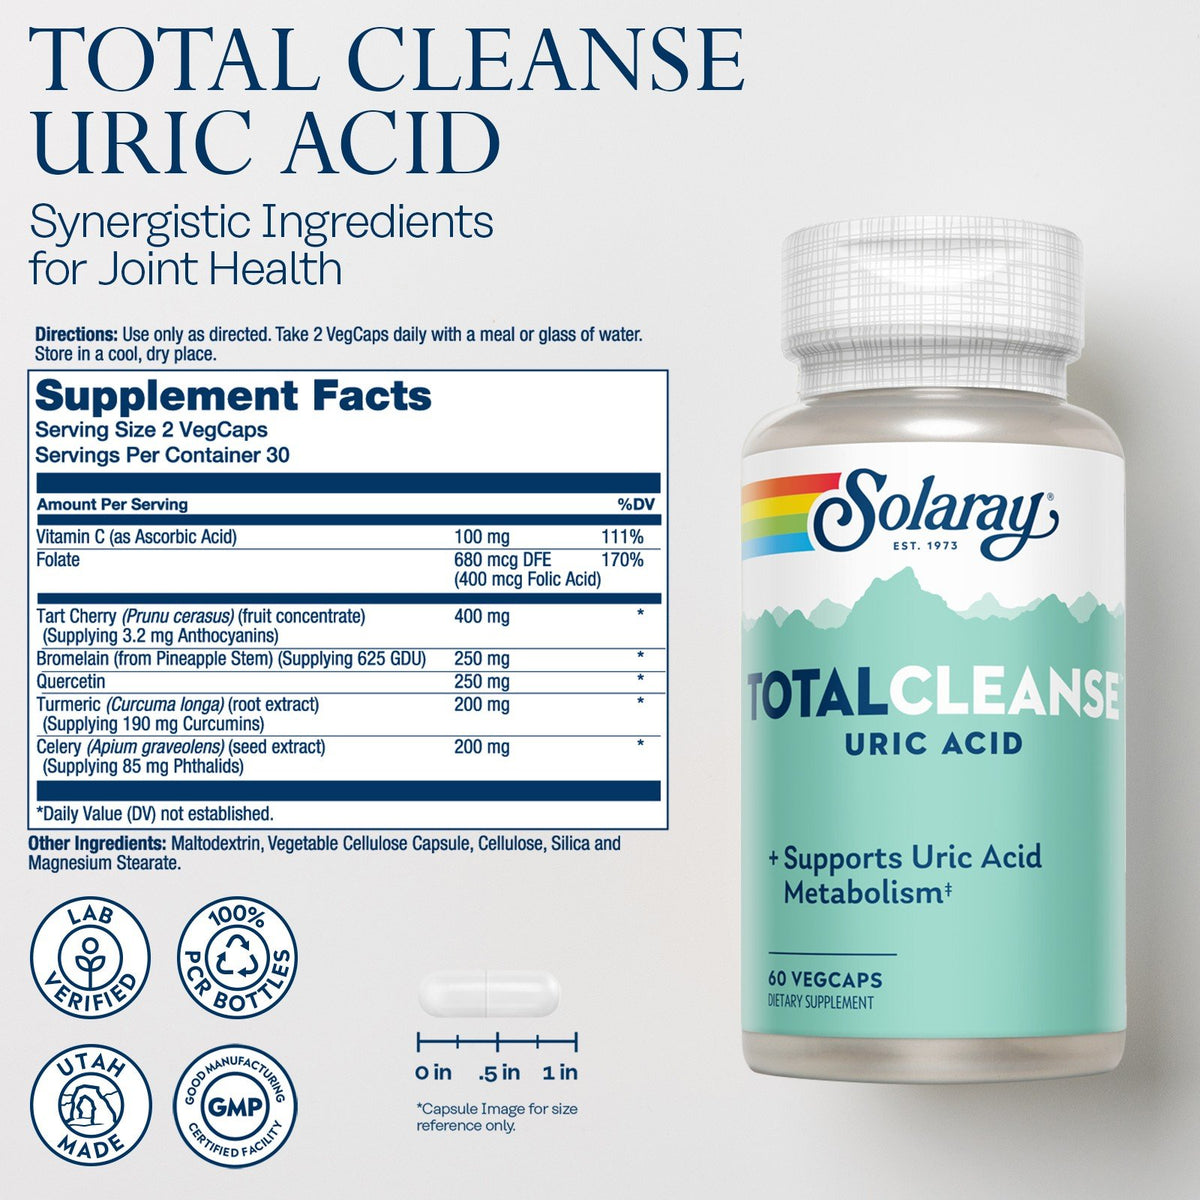 Solaray Total Cleanse Uric Acid 60 VegCap